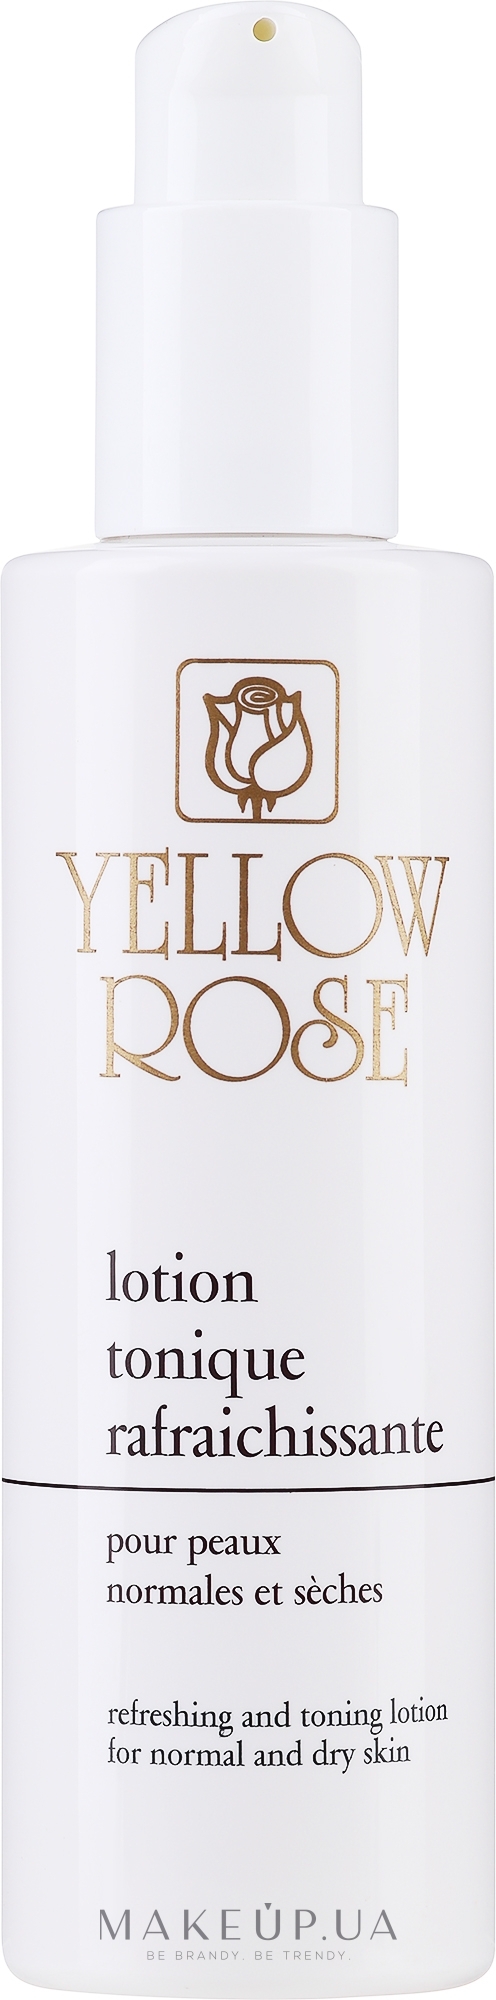 Освіжальний тонік для сухої й нормальної шкіри - Yellow Rose Lotion Tonique Rafraichissante — фото 200ml